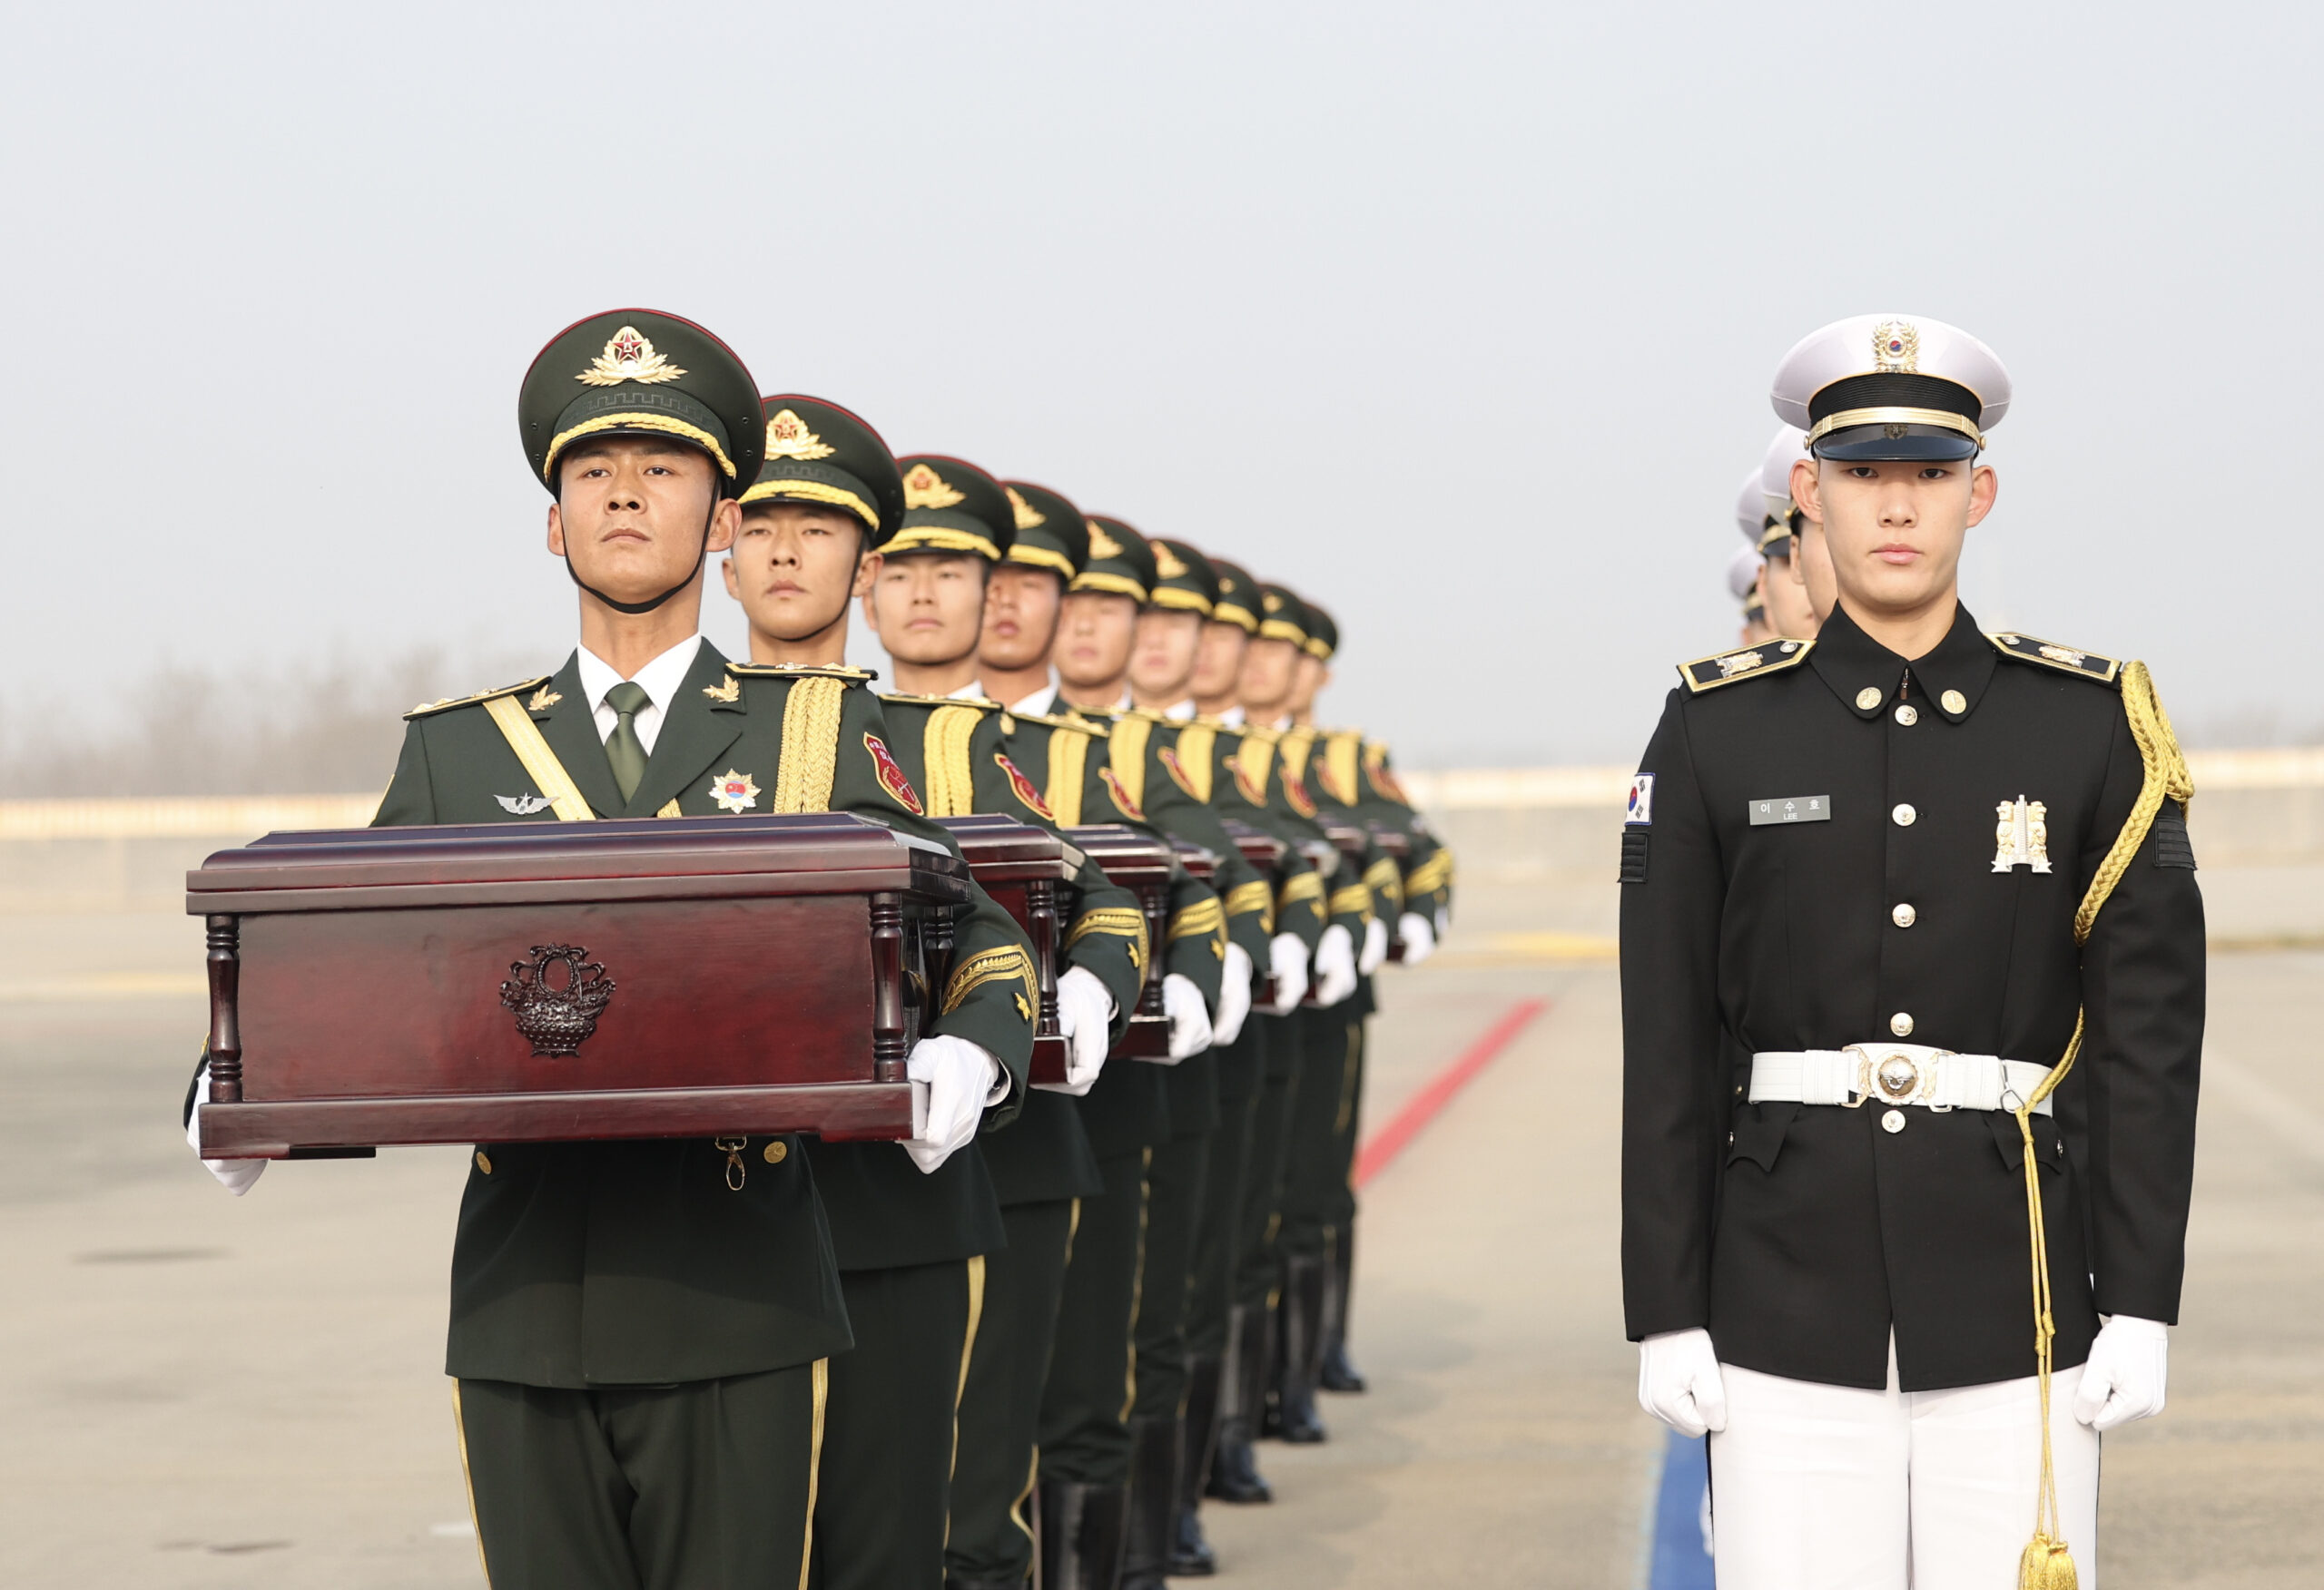 กระดูกทหารจีน 25 นายในสงครามเกาหลี หวนกลับมาตุภูมิ